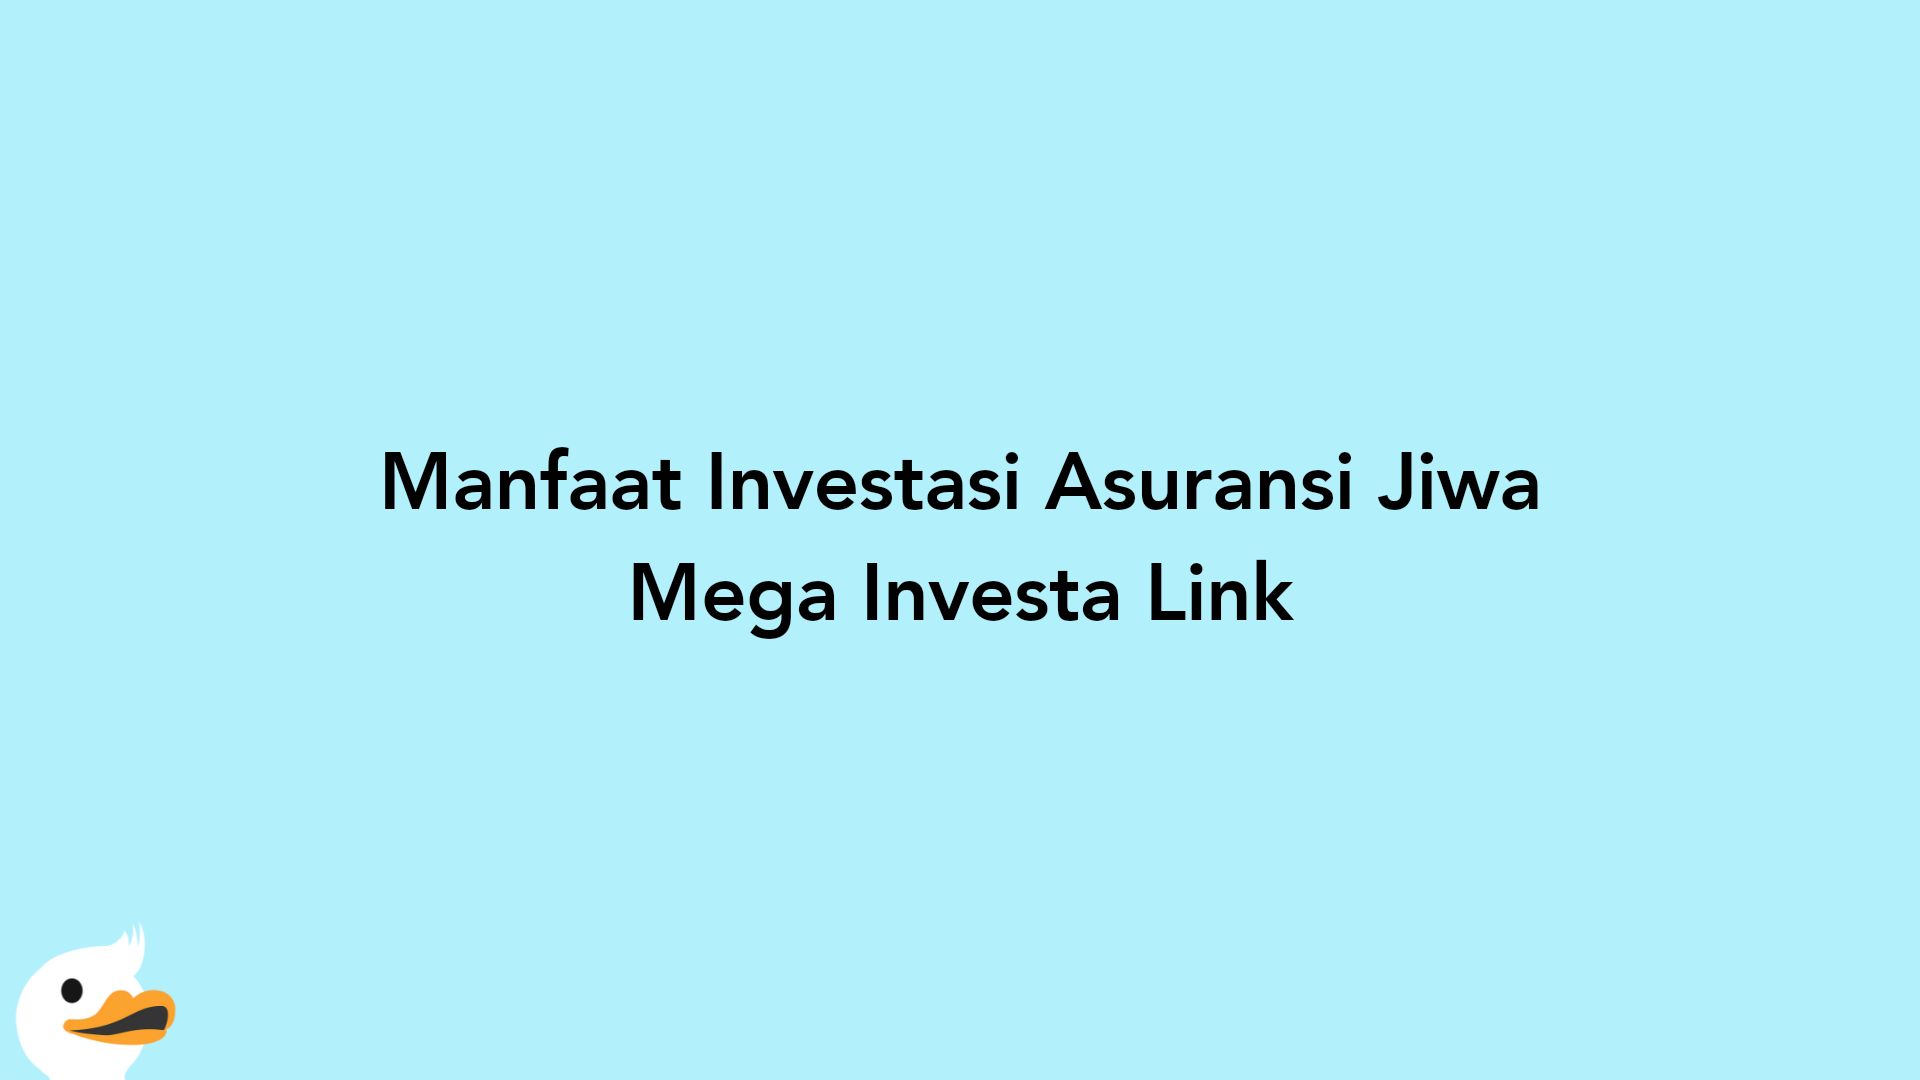 Manfaat Investasi Asuransi Jiwa Mega Investa Link